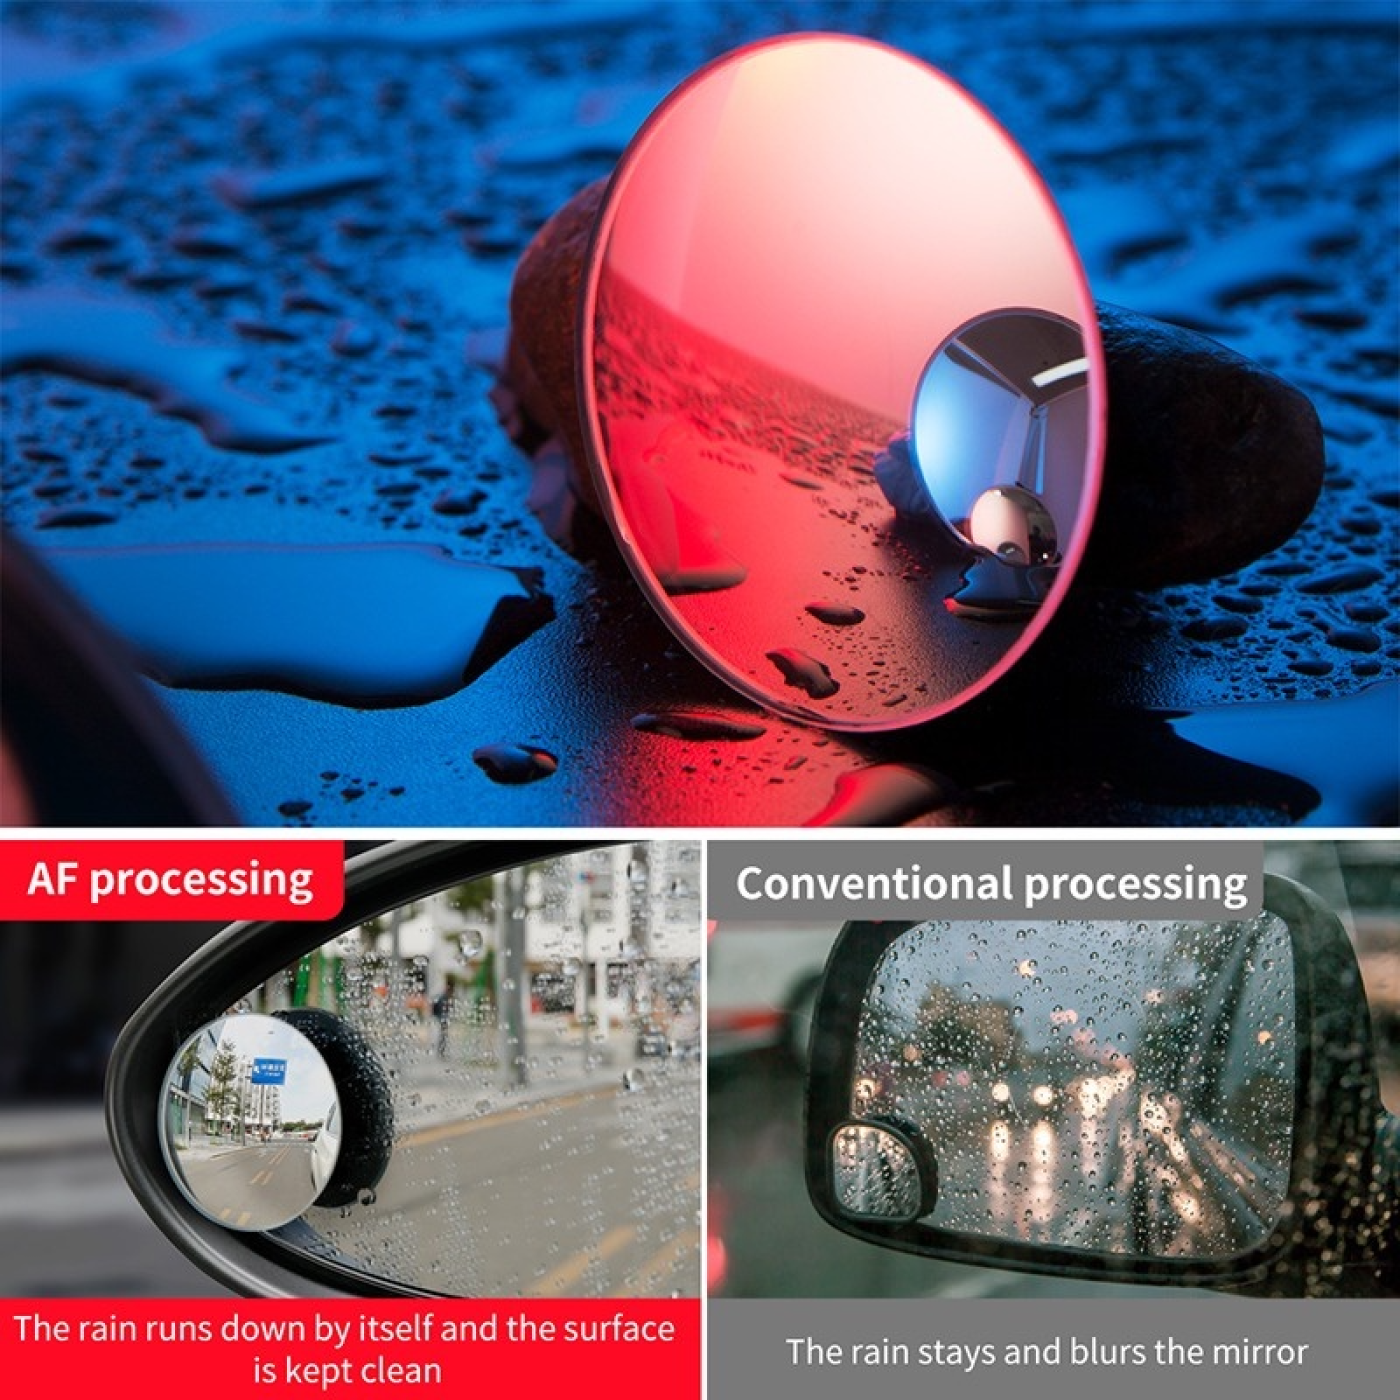 Gương cầu lồi mở rộng góc nhìn, chống điểm mù cho xe hơi Baseus Blind Spot Rearview Mirrors